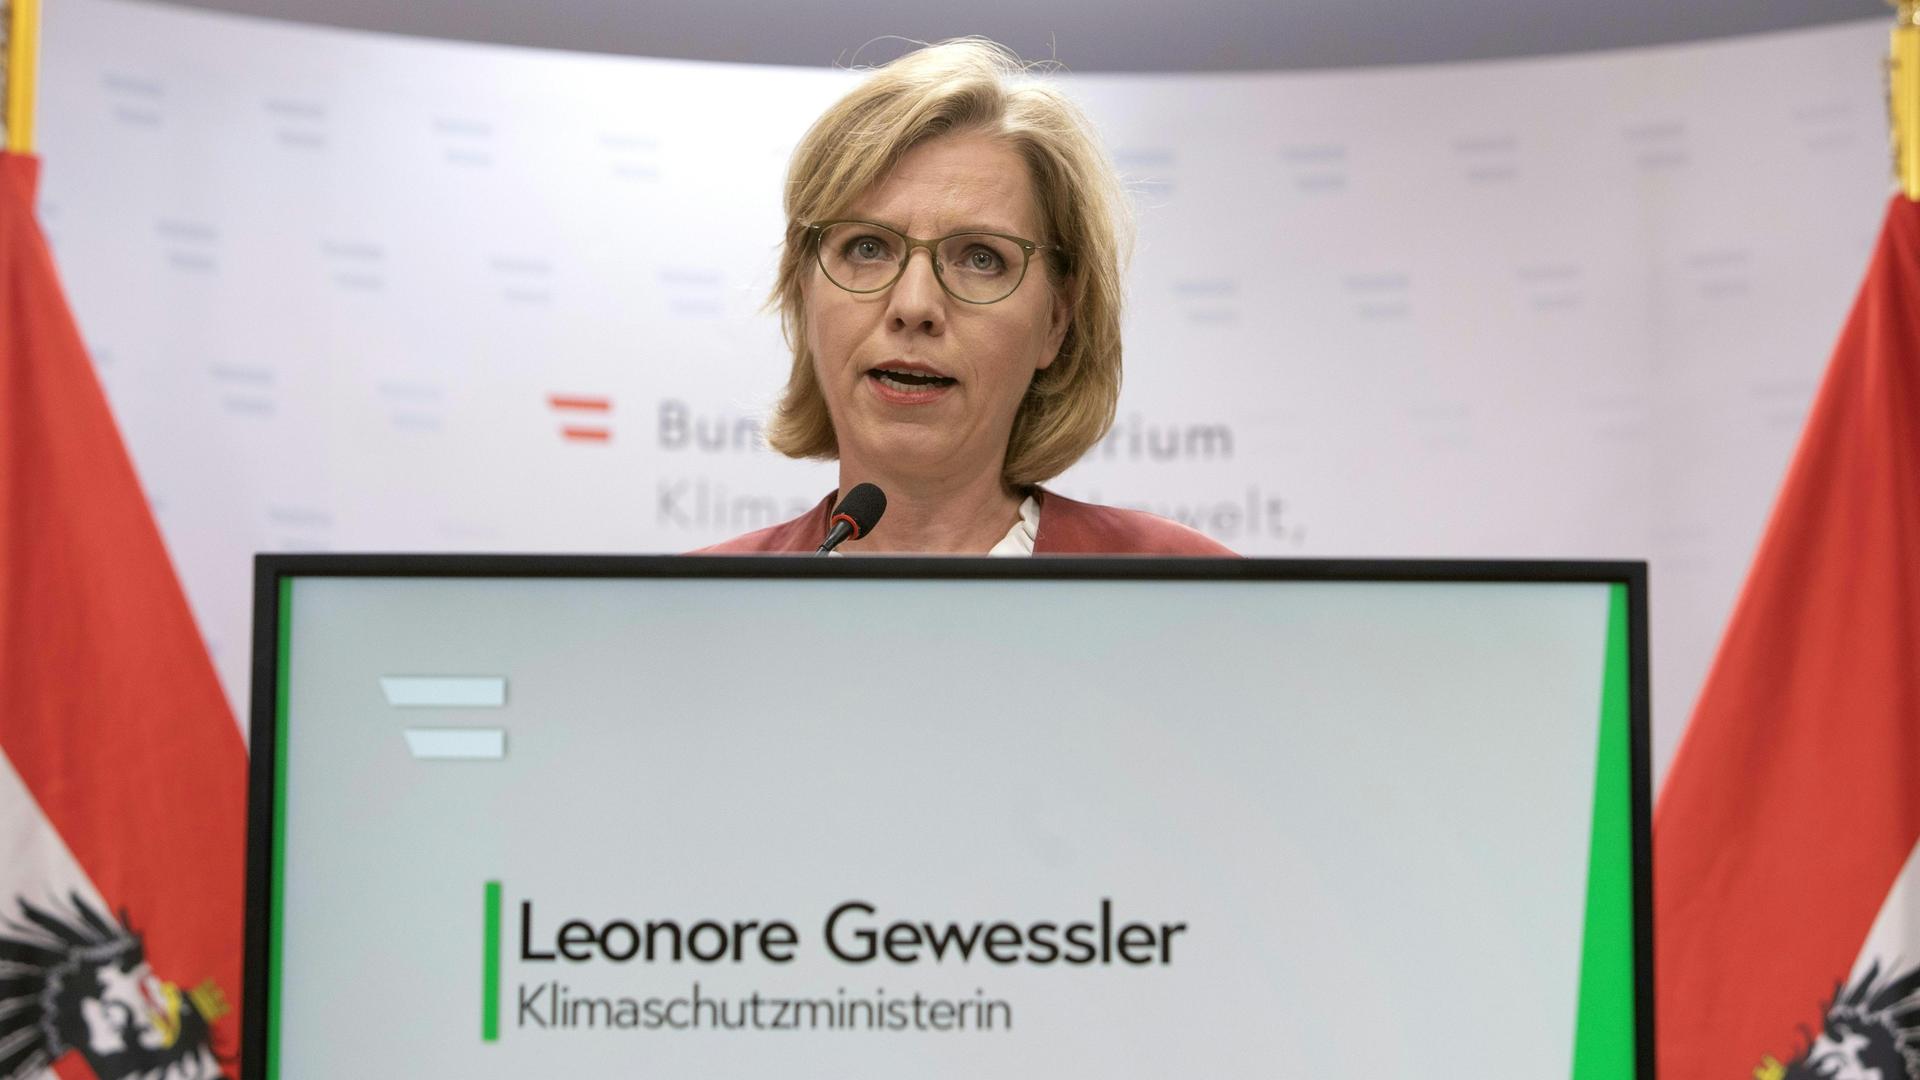 Leonore Gewessler, Klimaschutzministerin von Österreich, gibt eine Pressekonferenz in Wien. 